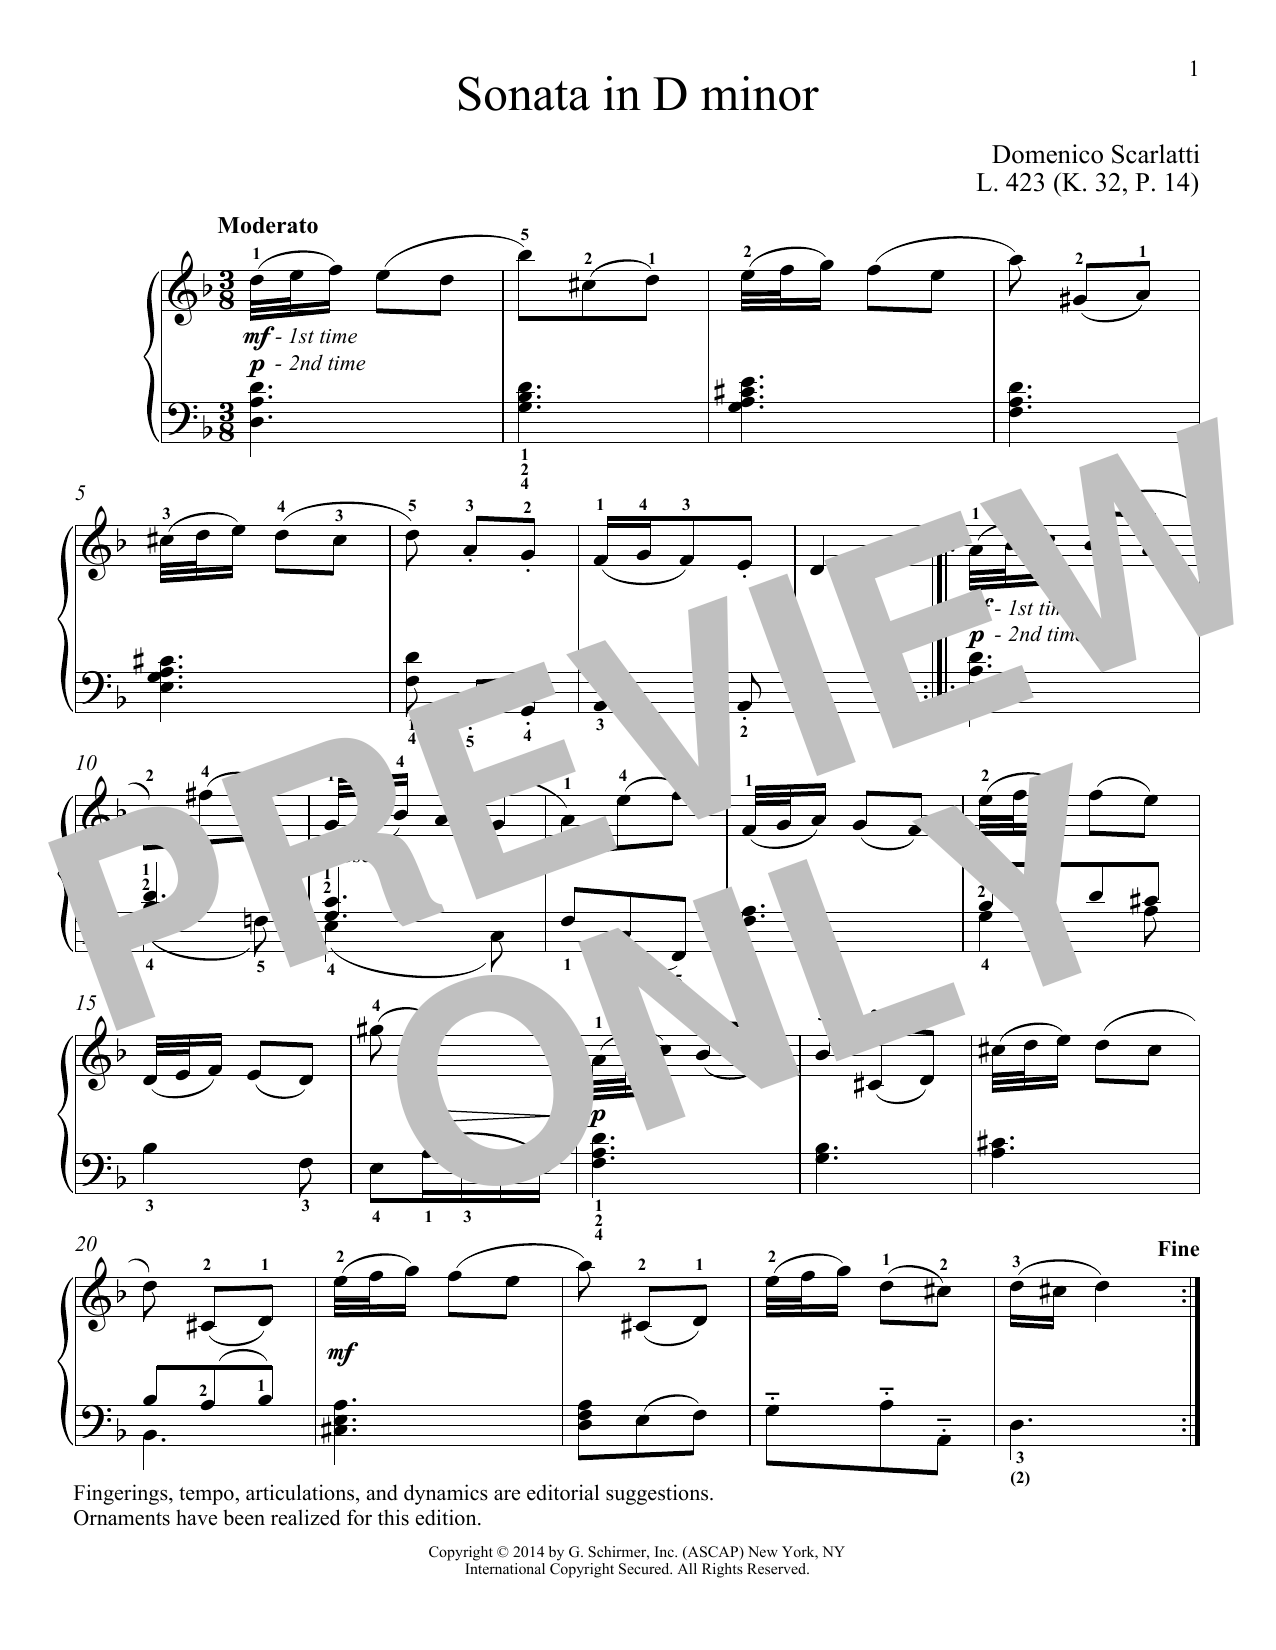 Domenico Scarlatti Sonata In D Minor, L. 423 Sheet Music Notes & Chords for Piano - Download or Print PDF